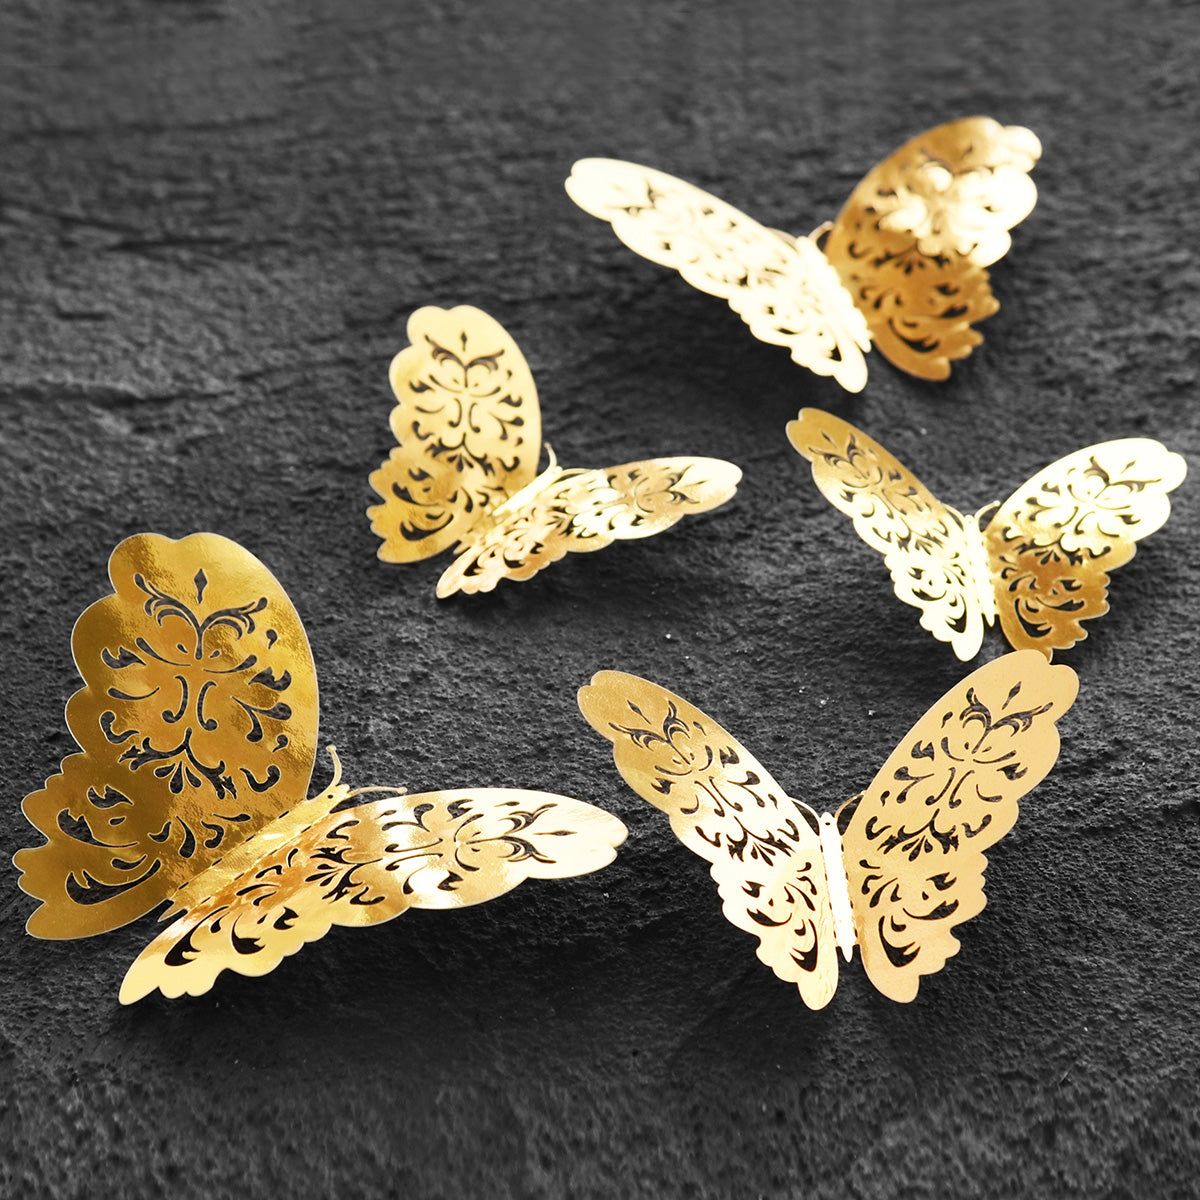 Gold Butterflies Wall Decorations Set - Floral Hollow Design